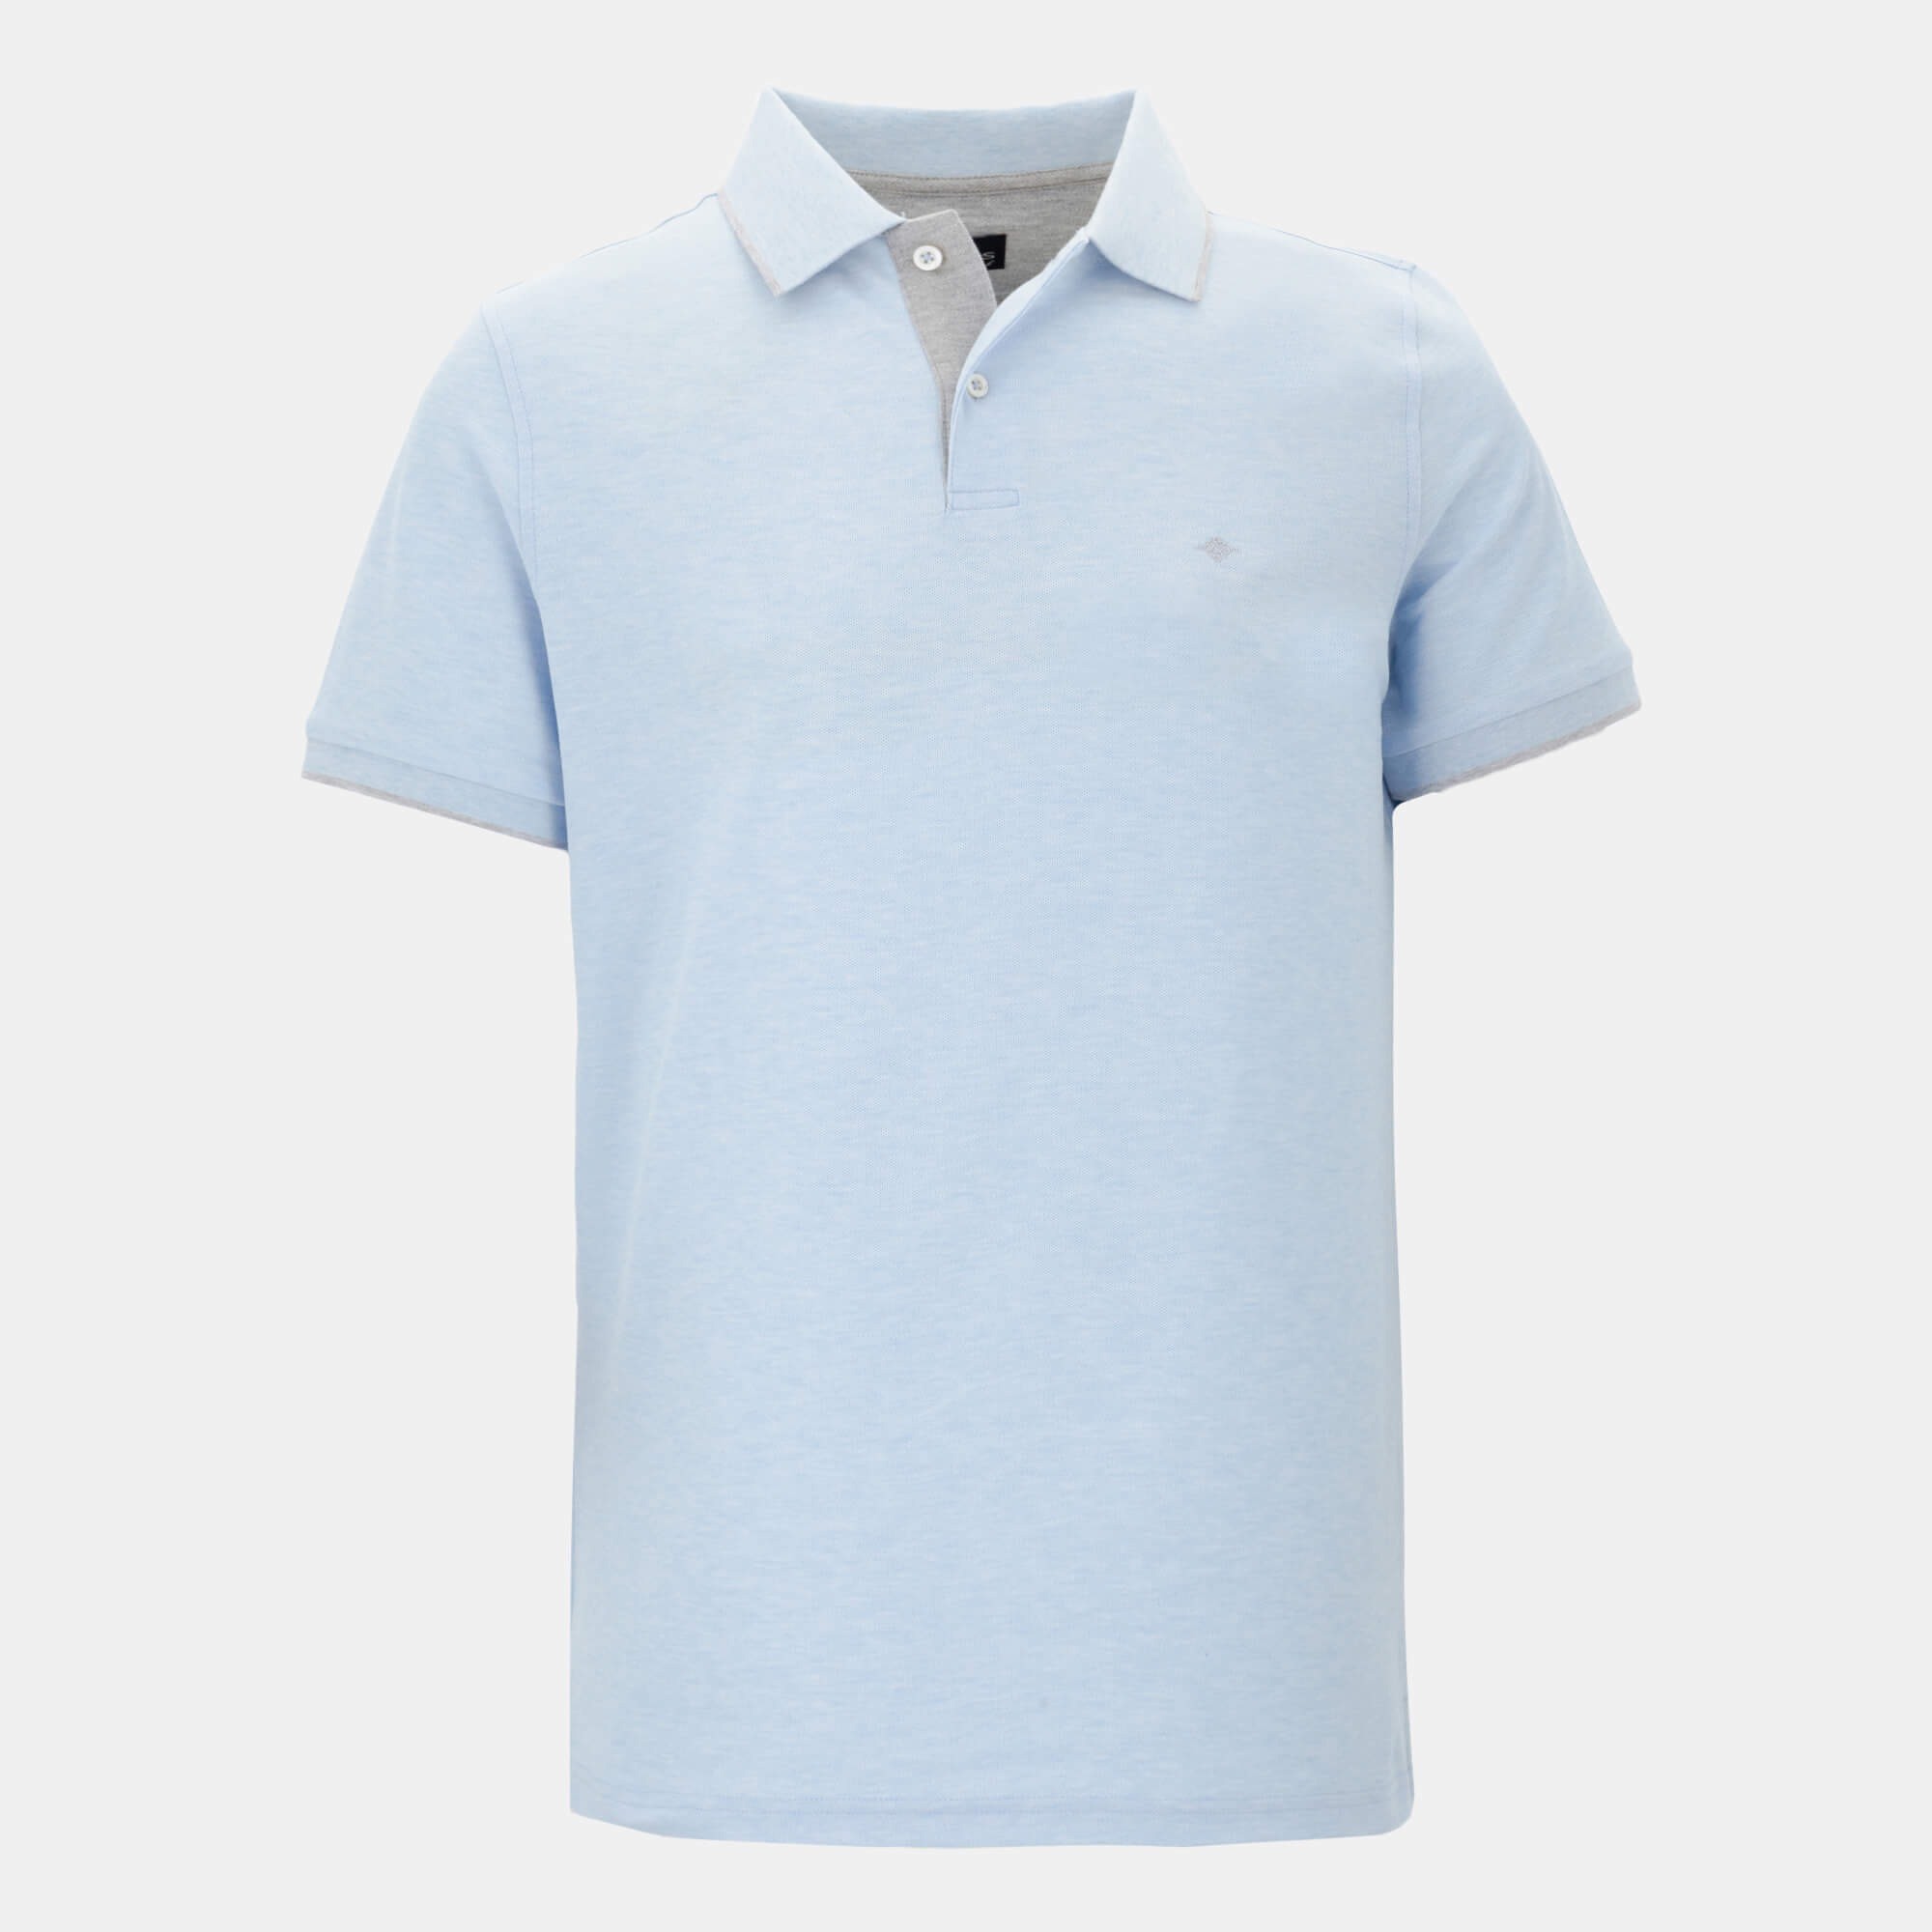 Plain polo shirt 216588